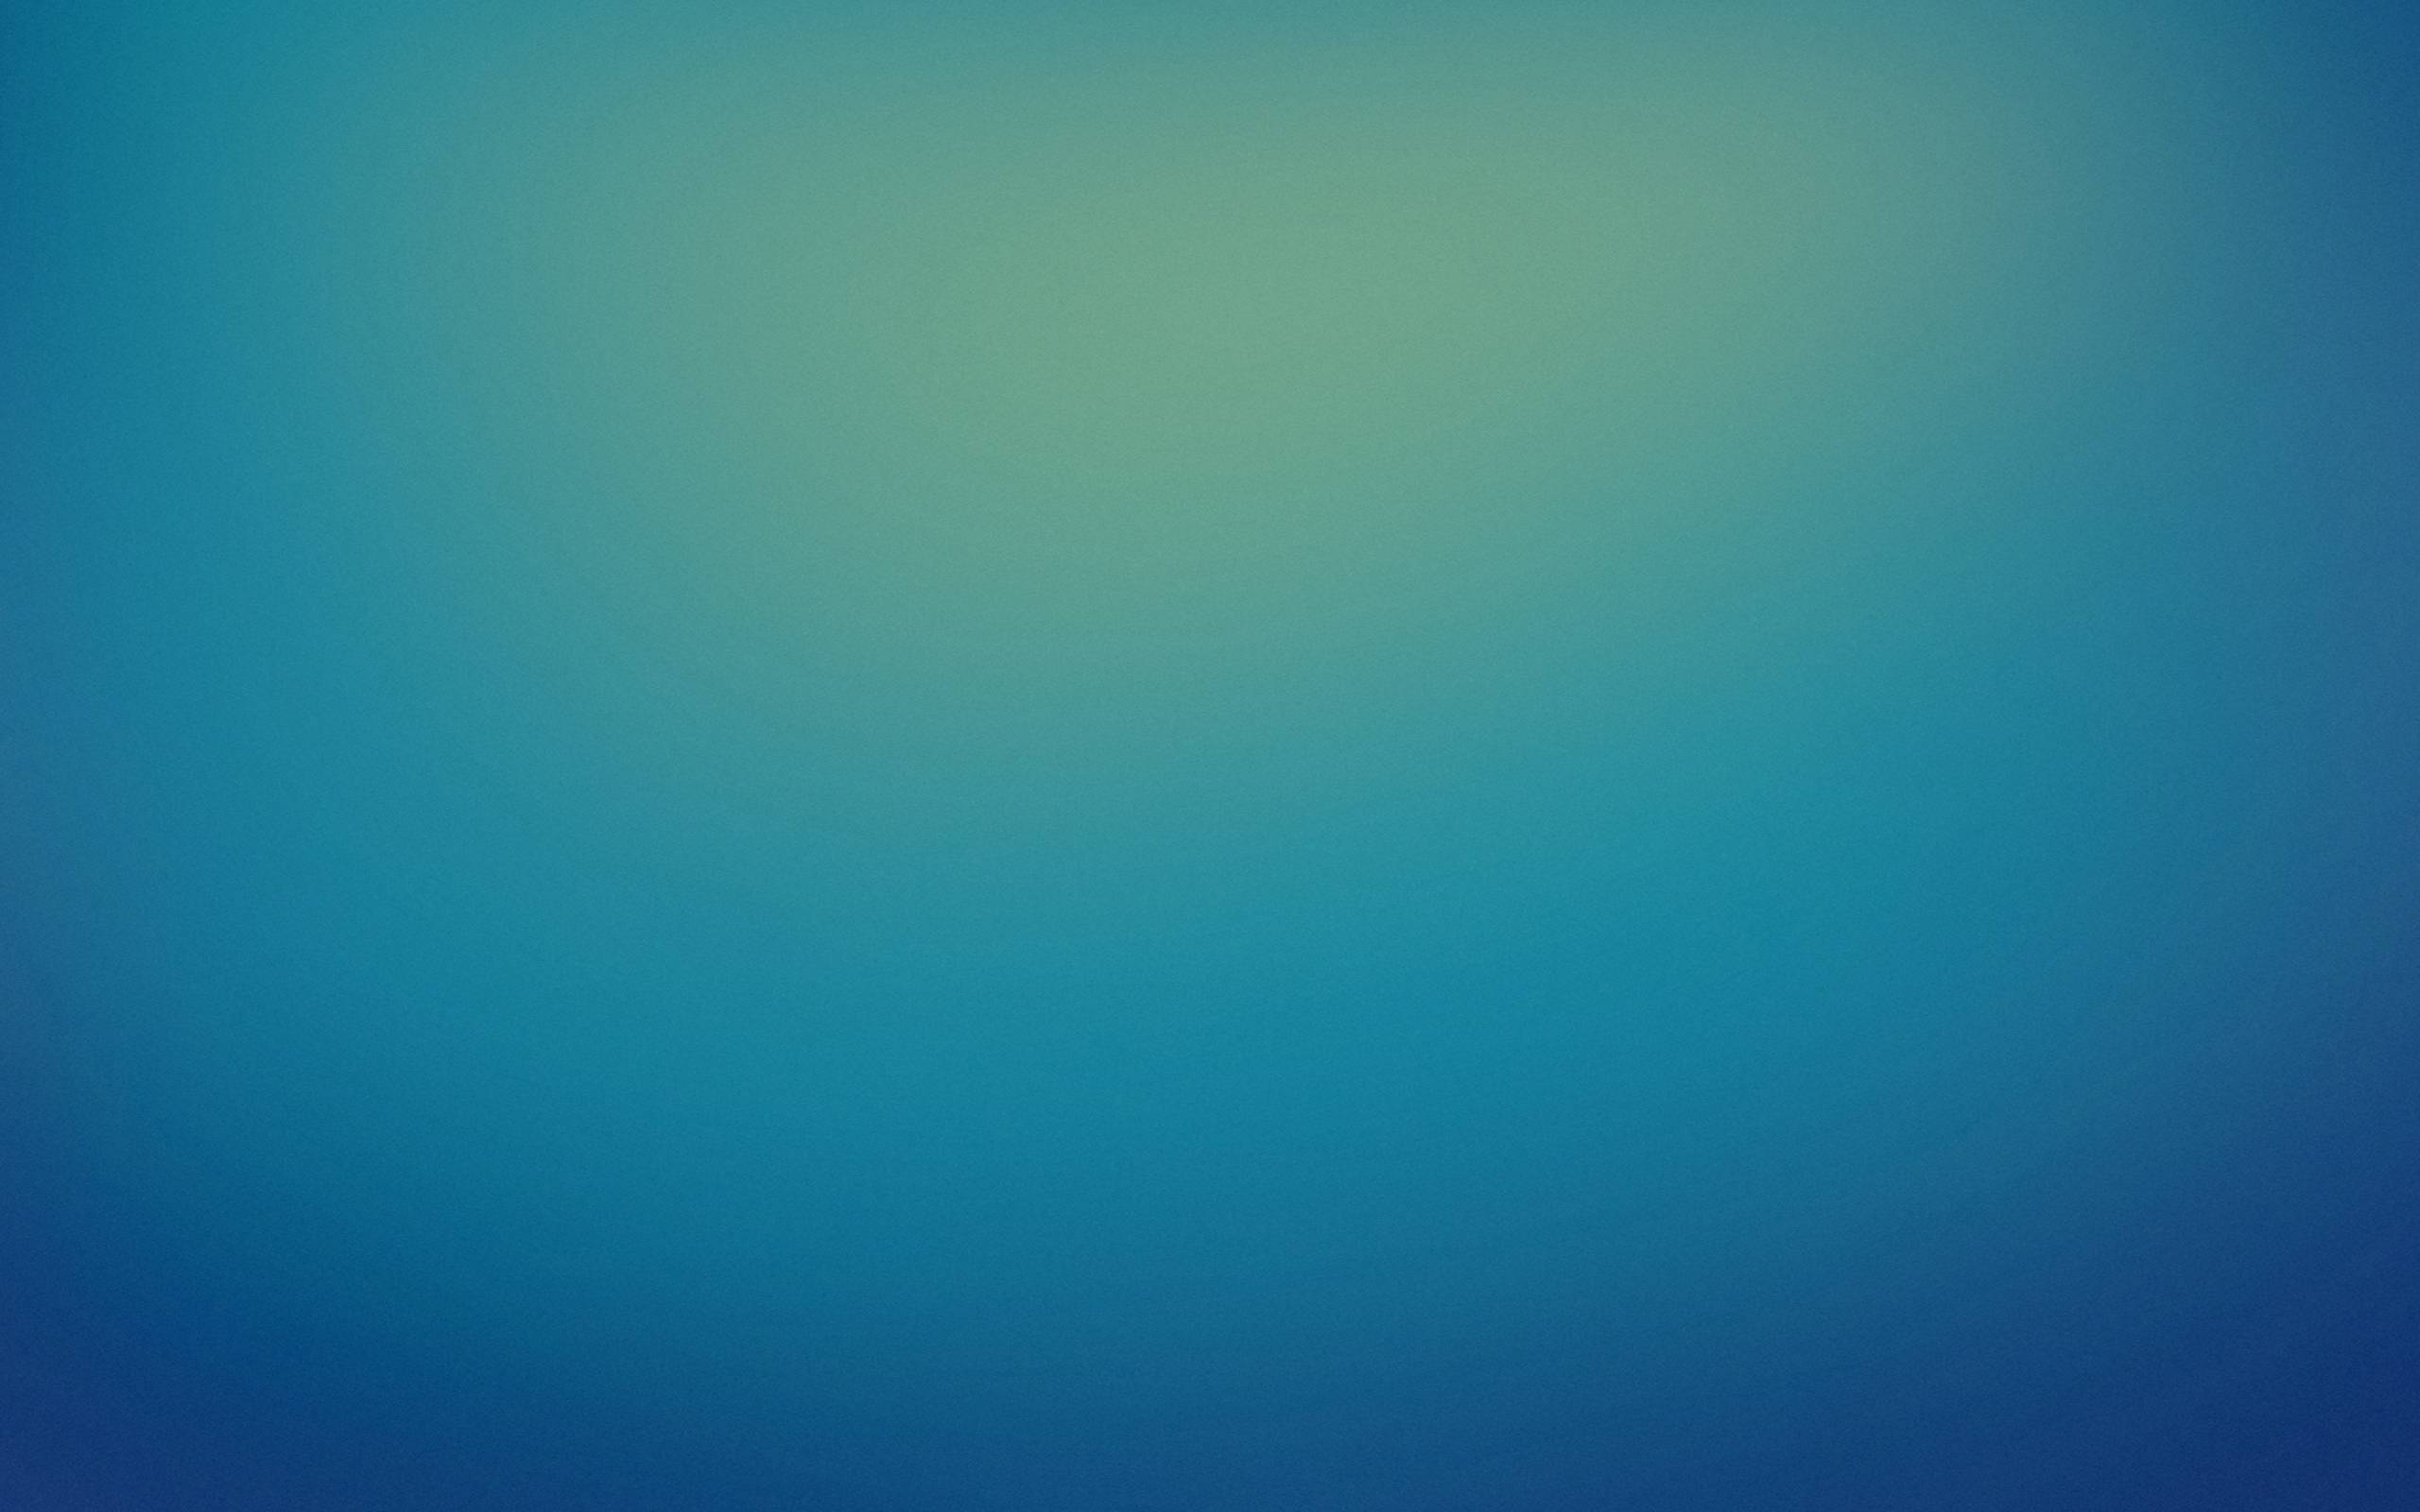 Solid color one colour single blue plain 2636x1080 wallpaper 4K HD